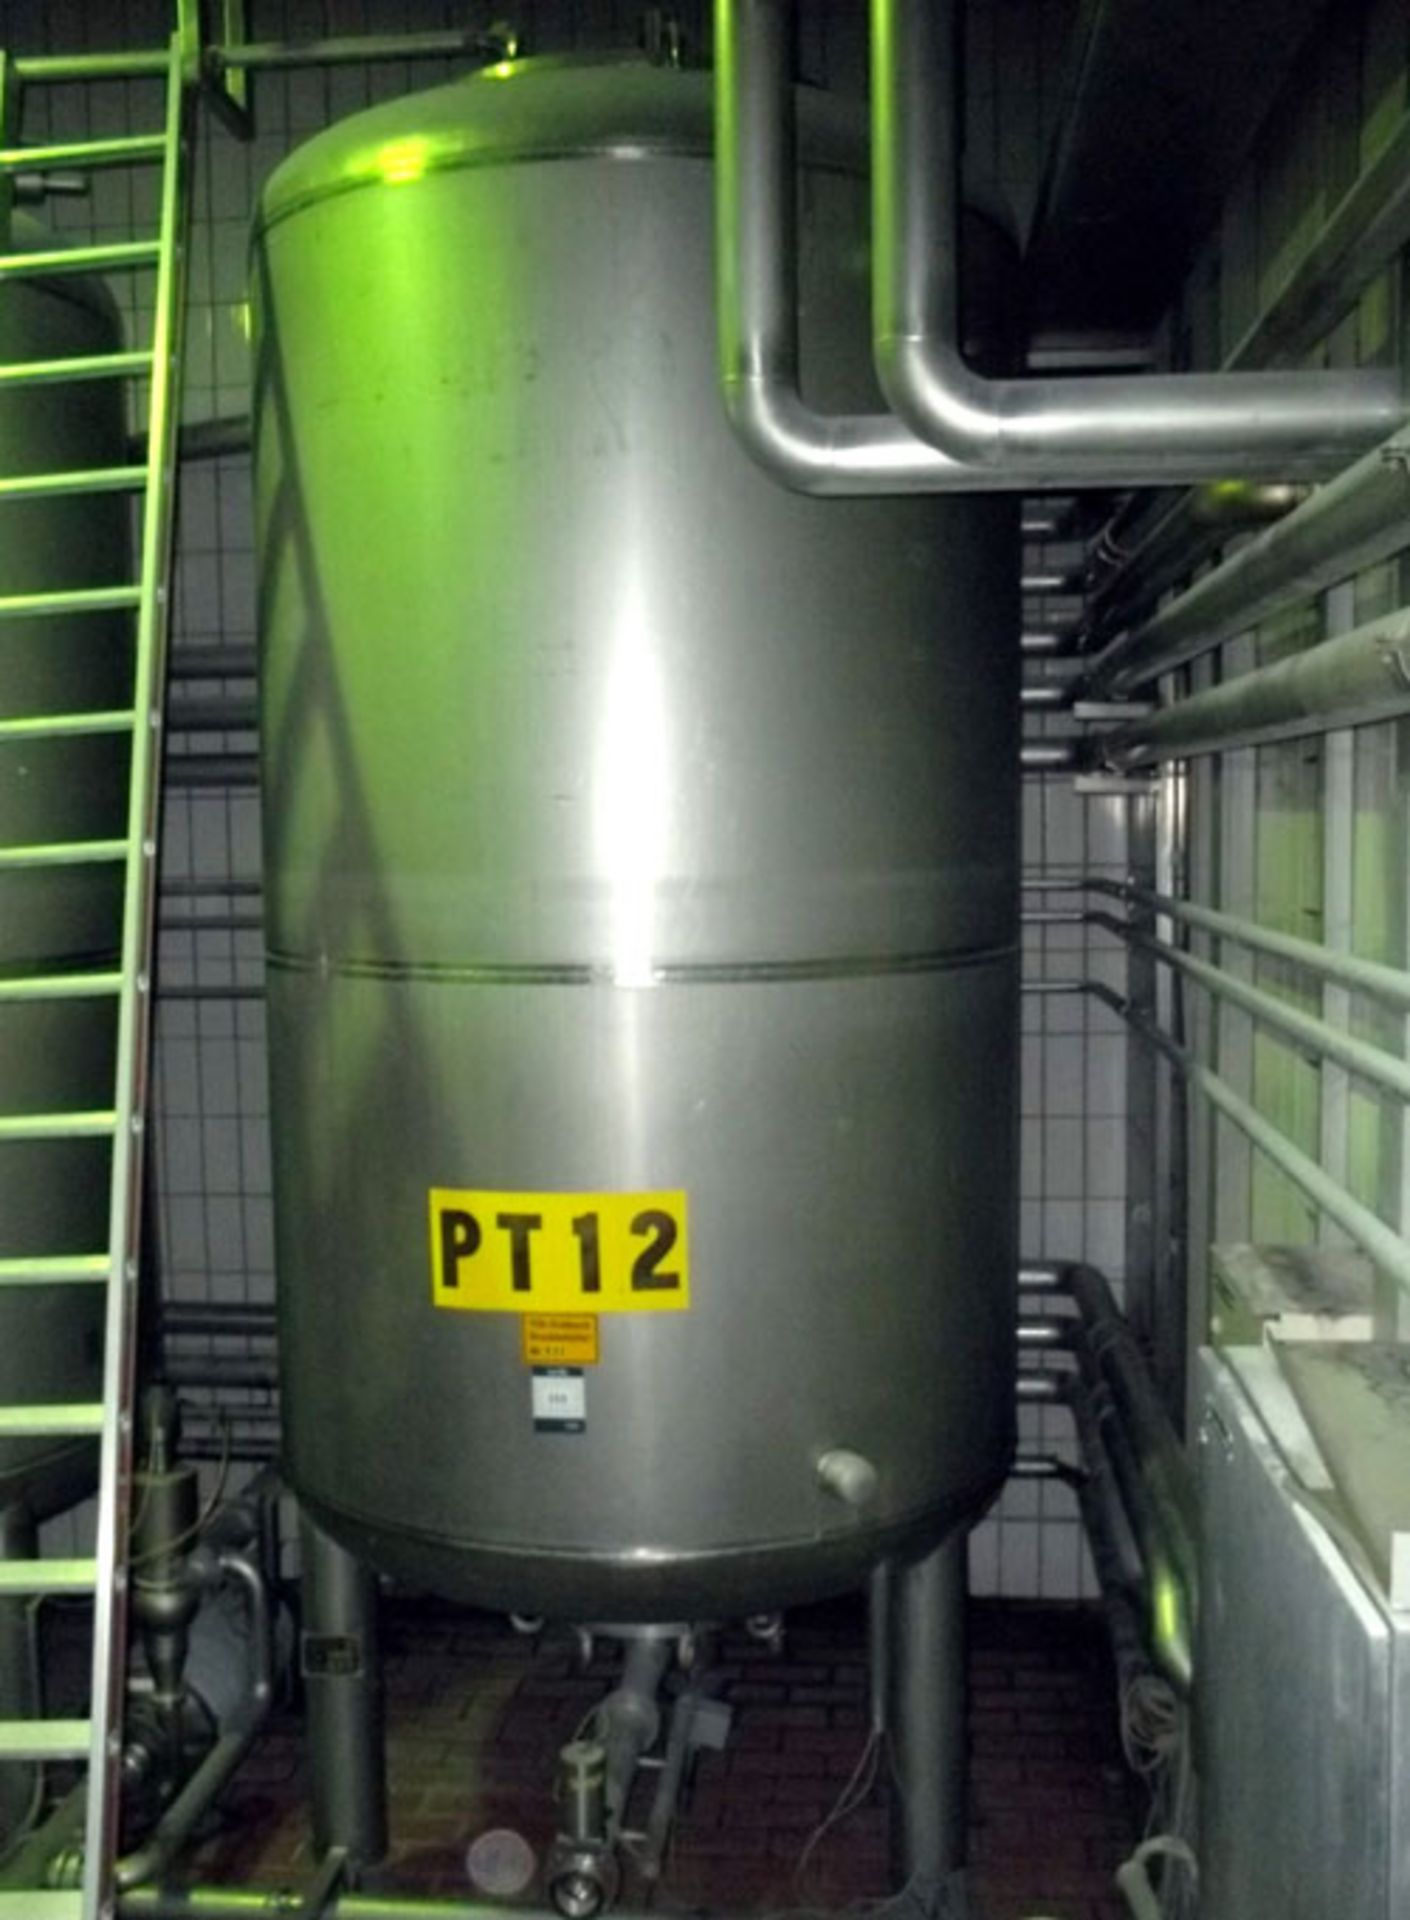 H. Bauer Maschinen-und-Apparatebau stainless steel tank, 1348 gallon (5098 liter) capacity,